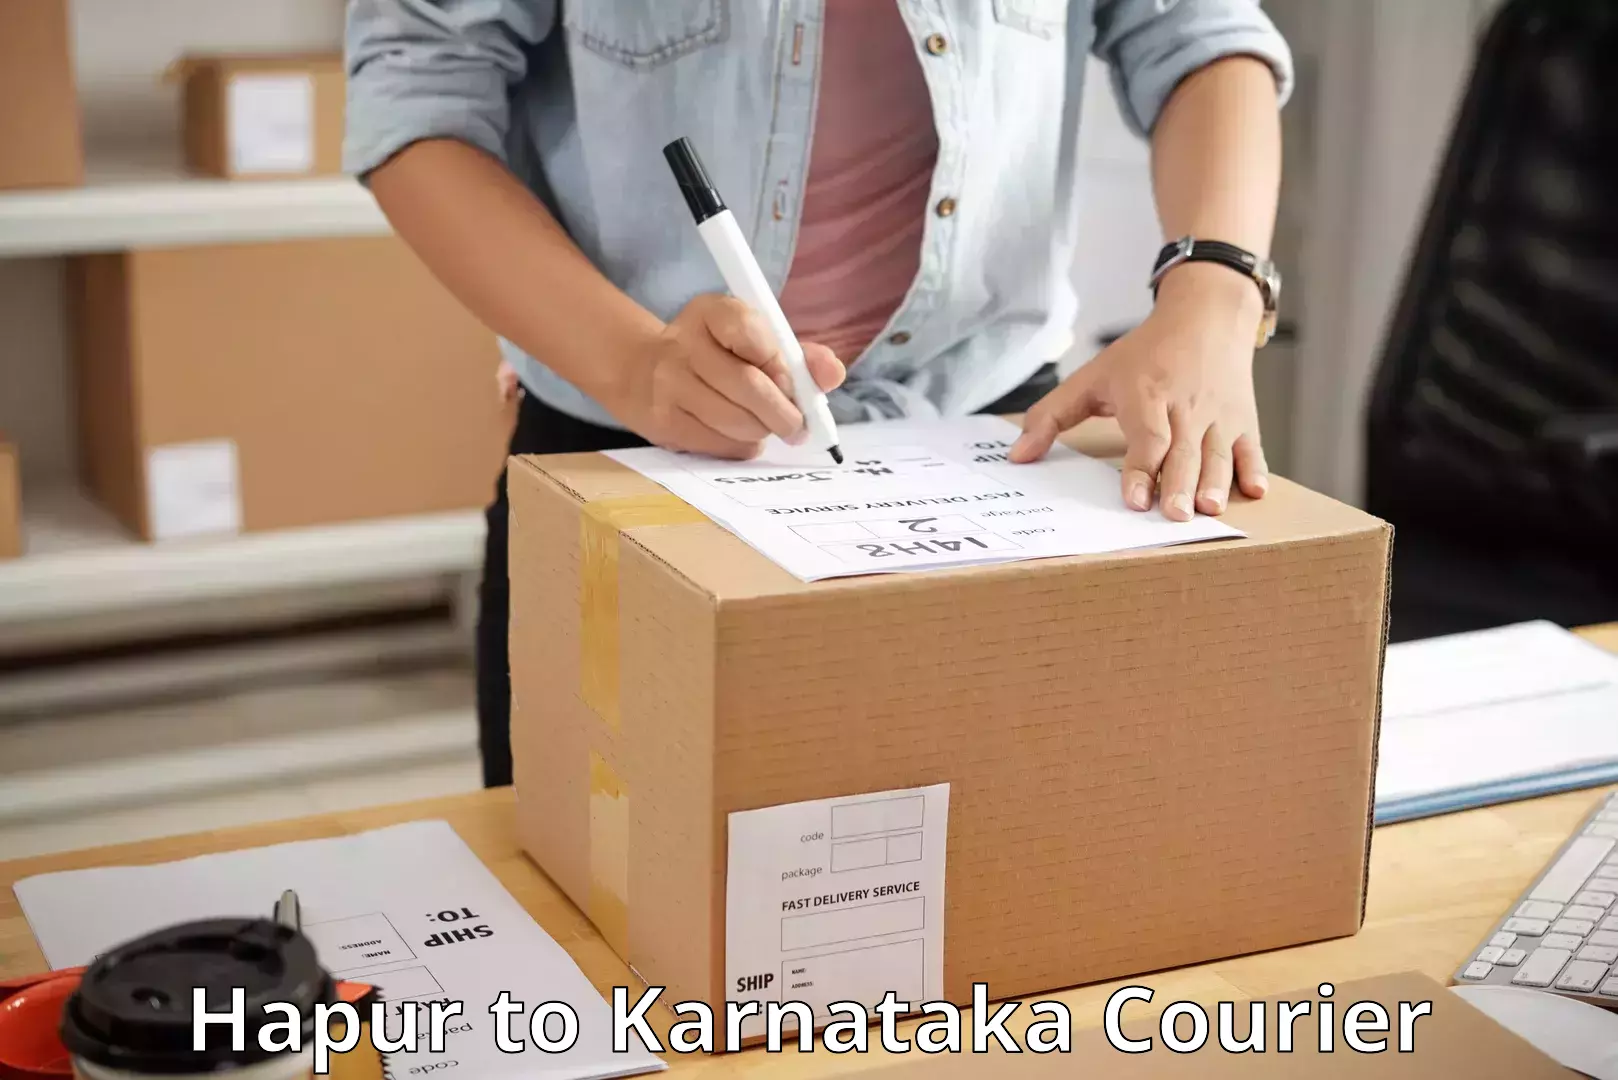 Affordable shipping solutions Hapur to Karnataka